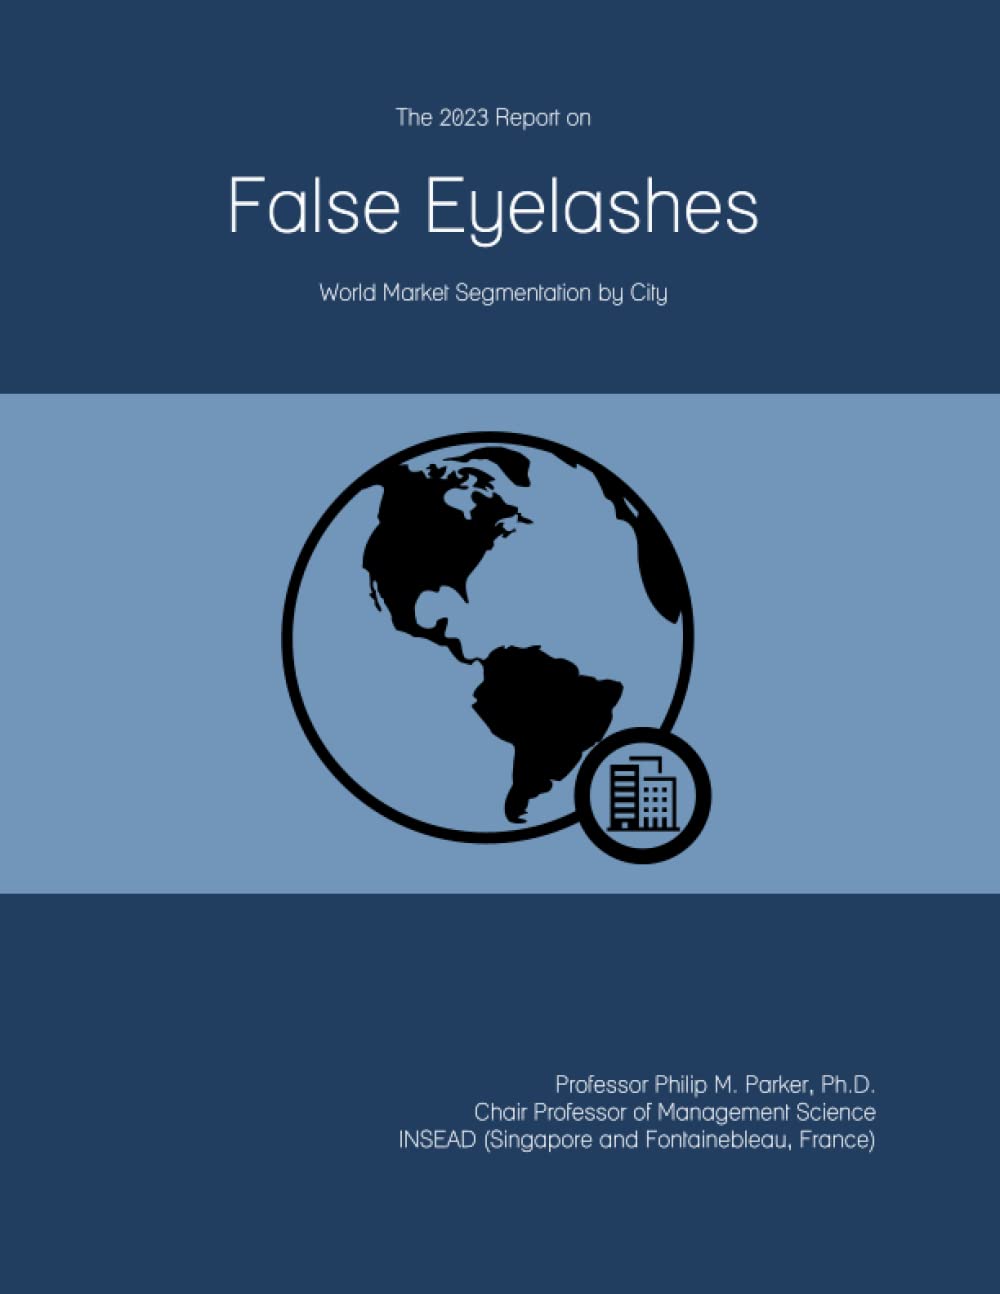 The 2023 Report on False Eyelashes: World Market Segmentation by City     Paperback – June 9, 2022